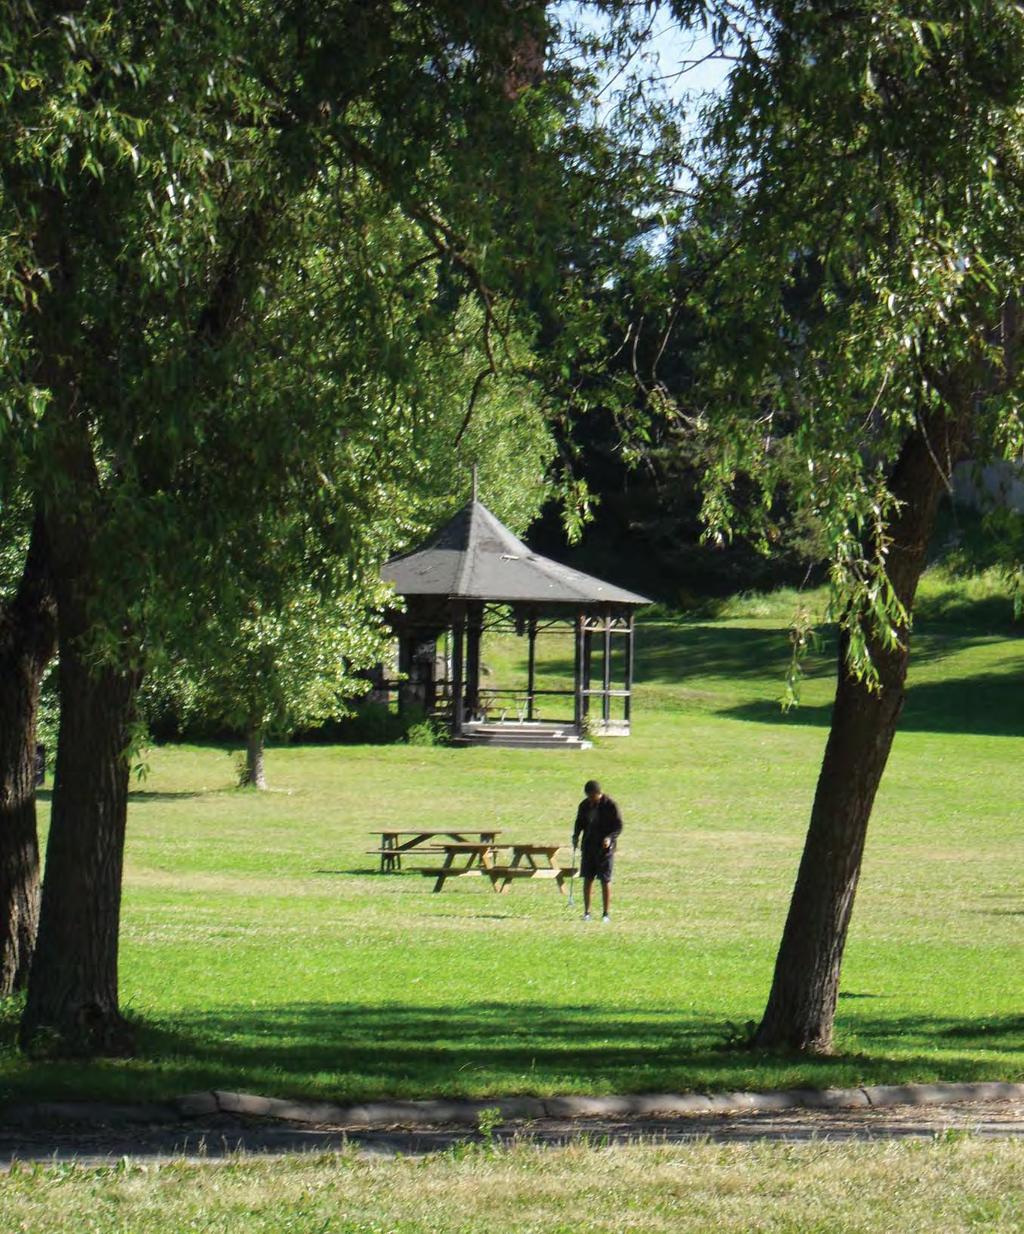 Parkplan Parkplanens övegripande mål är att det ska finnas attraktiva, trygga och tillgängliga parkmiljöer i Huddinge kommun inom rimligt avstånd från bostaden.